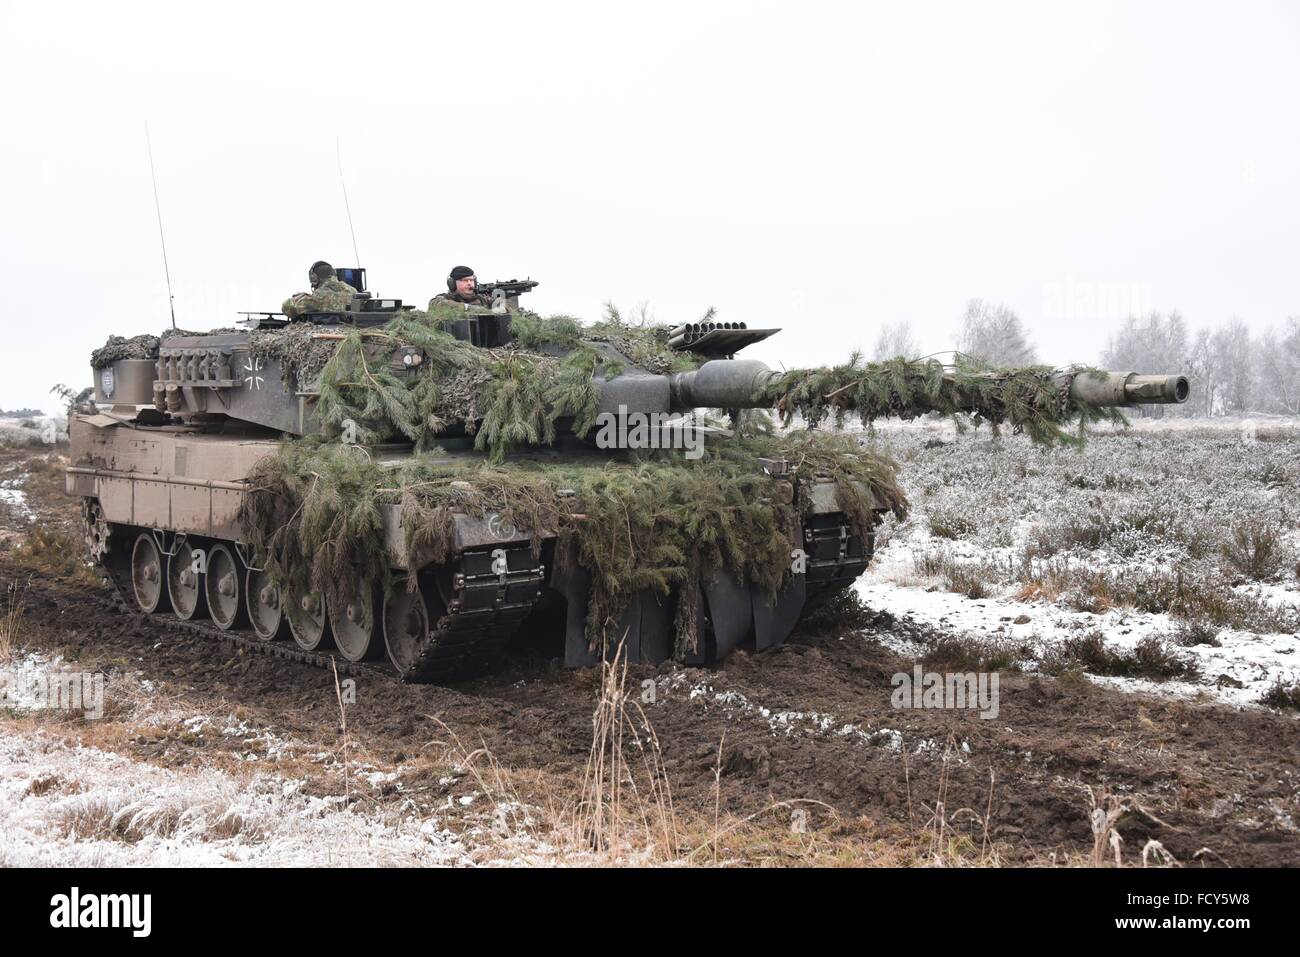 M113 APC – Leopard 2A6 – Main Battle Tank – Trident Juncture